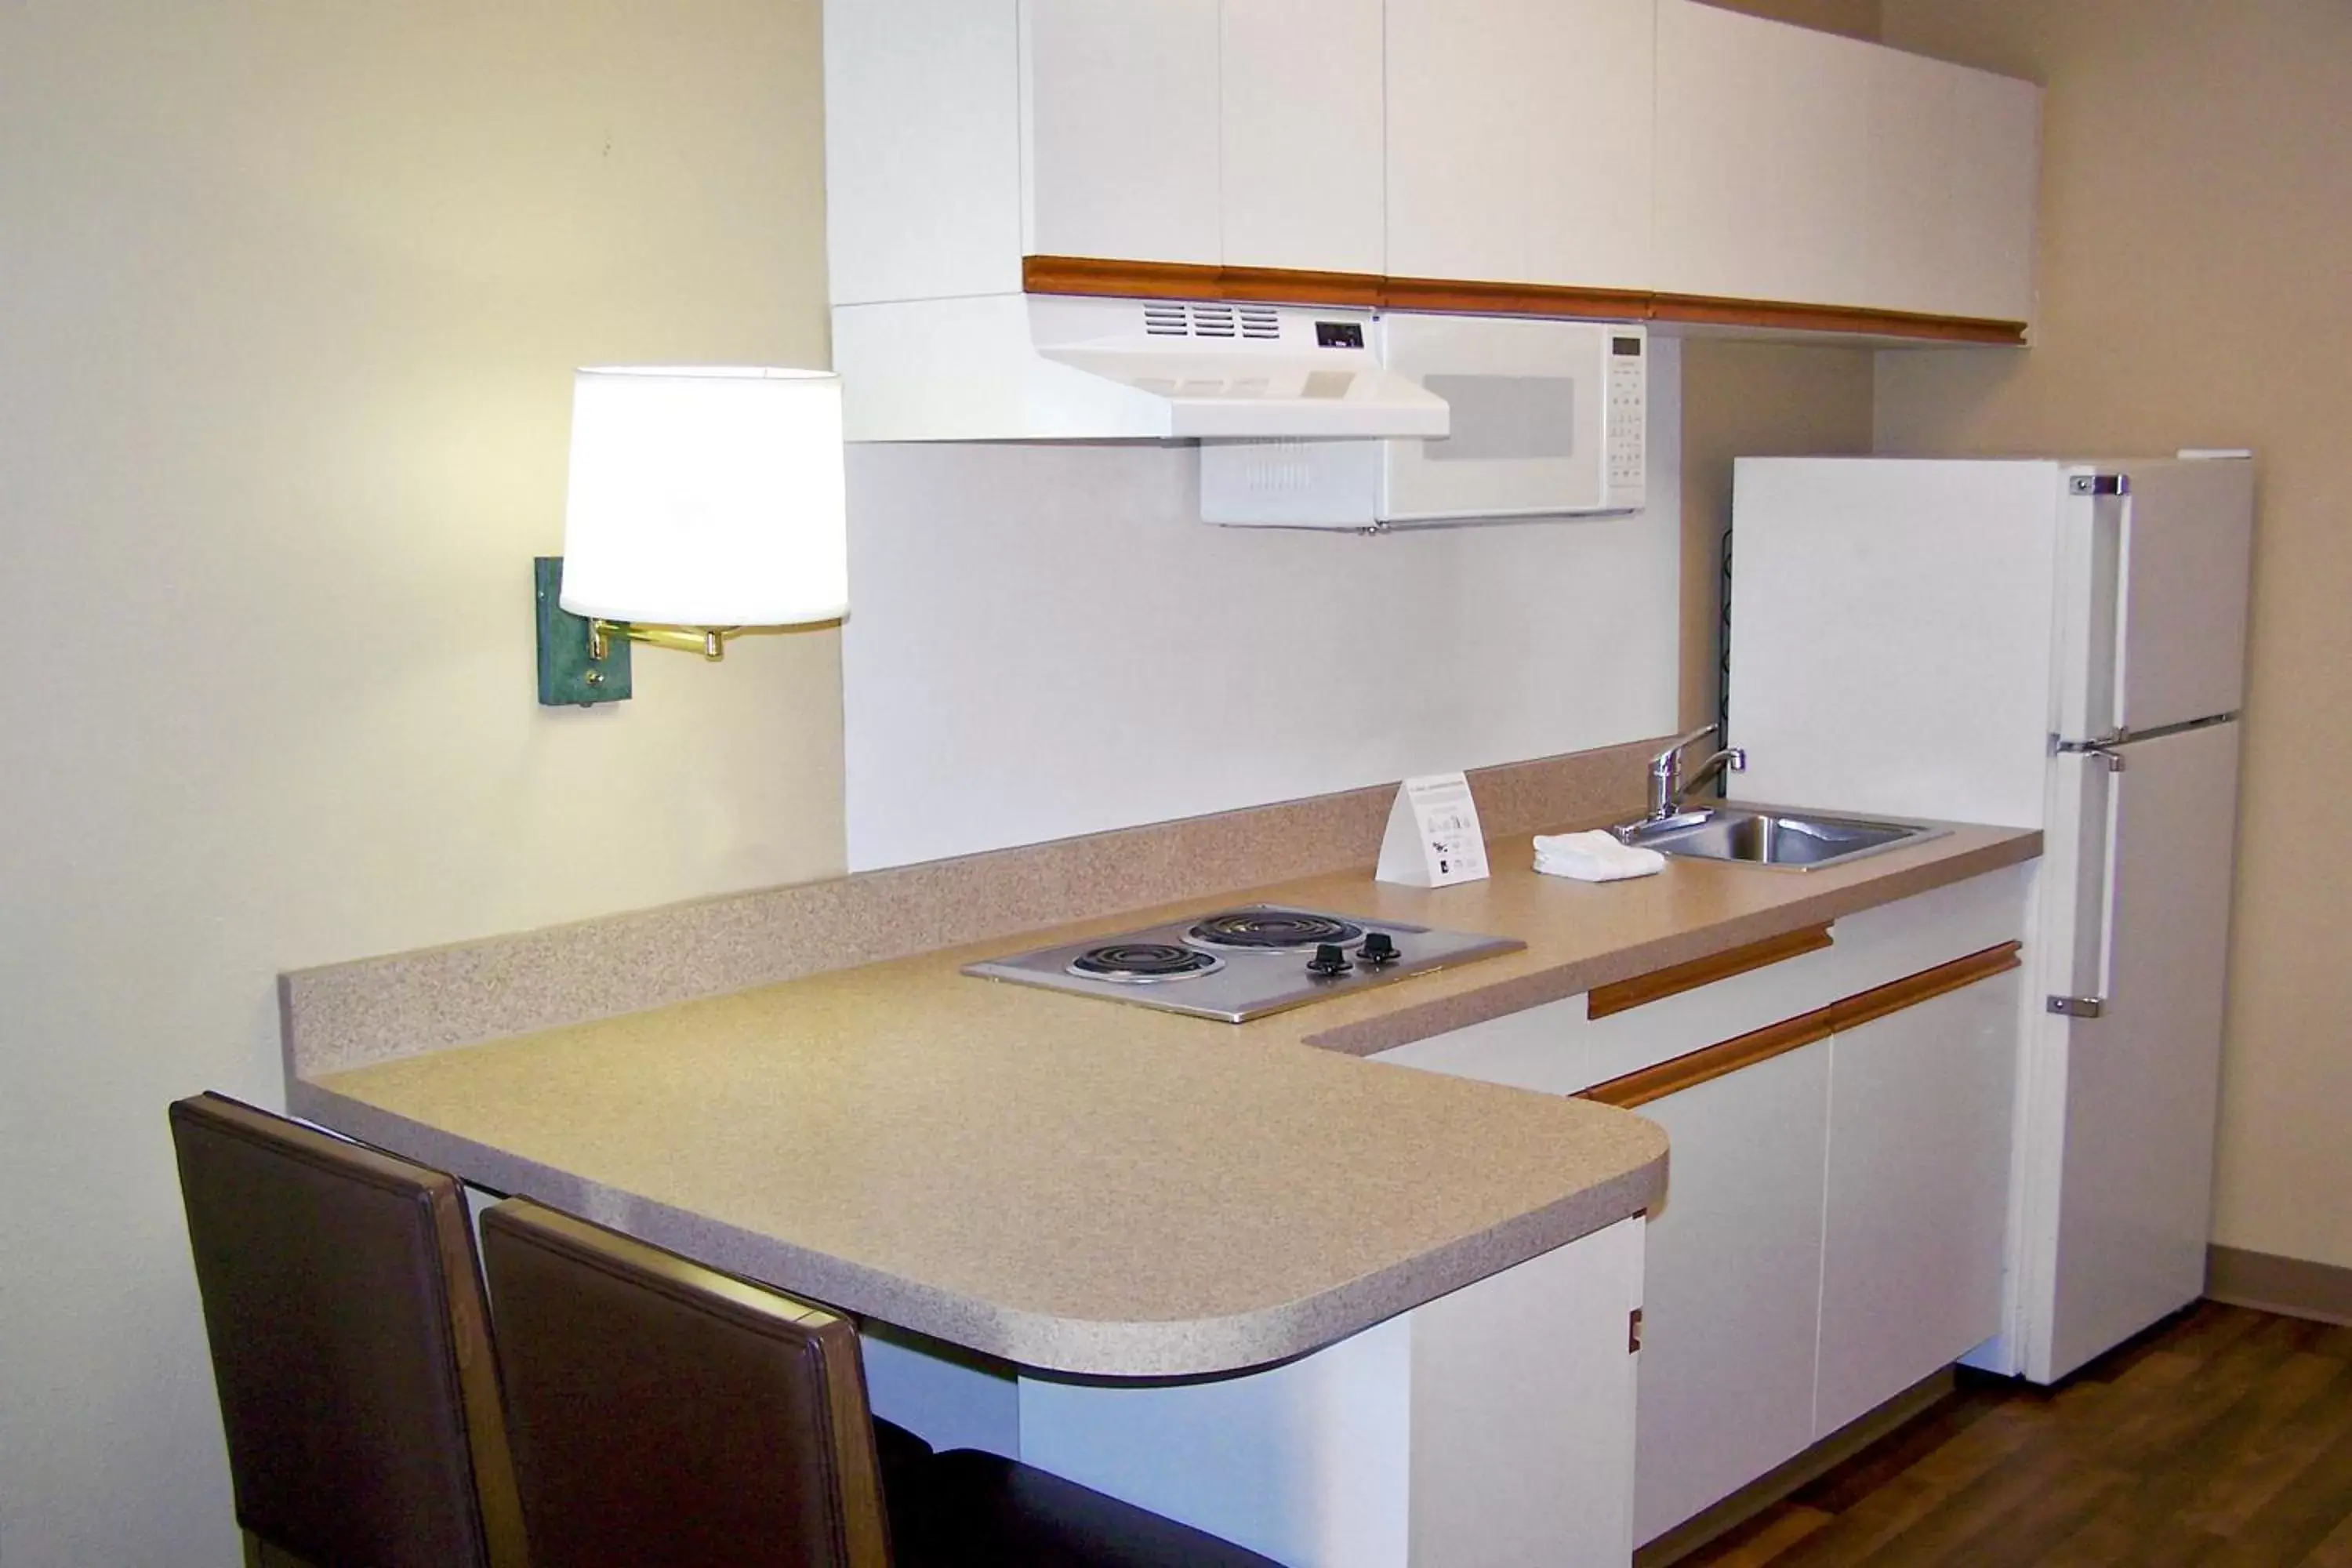 Kitchen or kitchenette, Kitchen/Kitchenette in Extended Stay America Suites - Las Vegas - Midtown